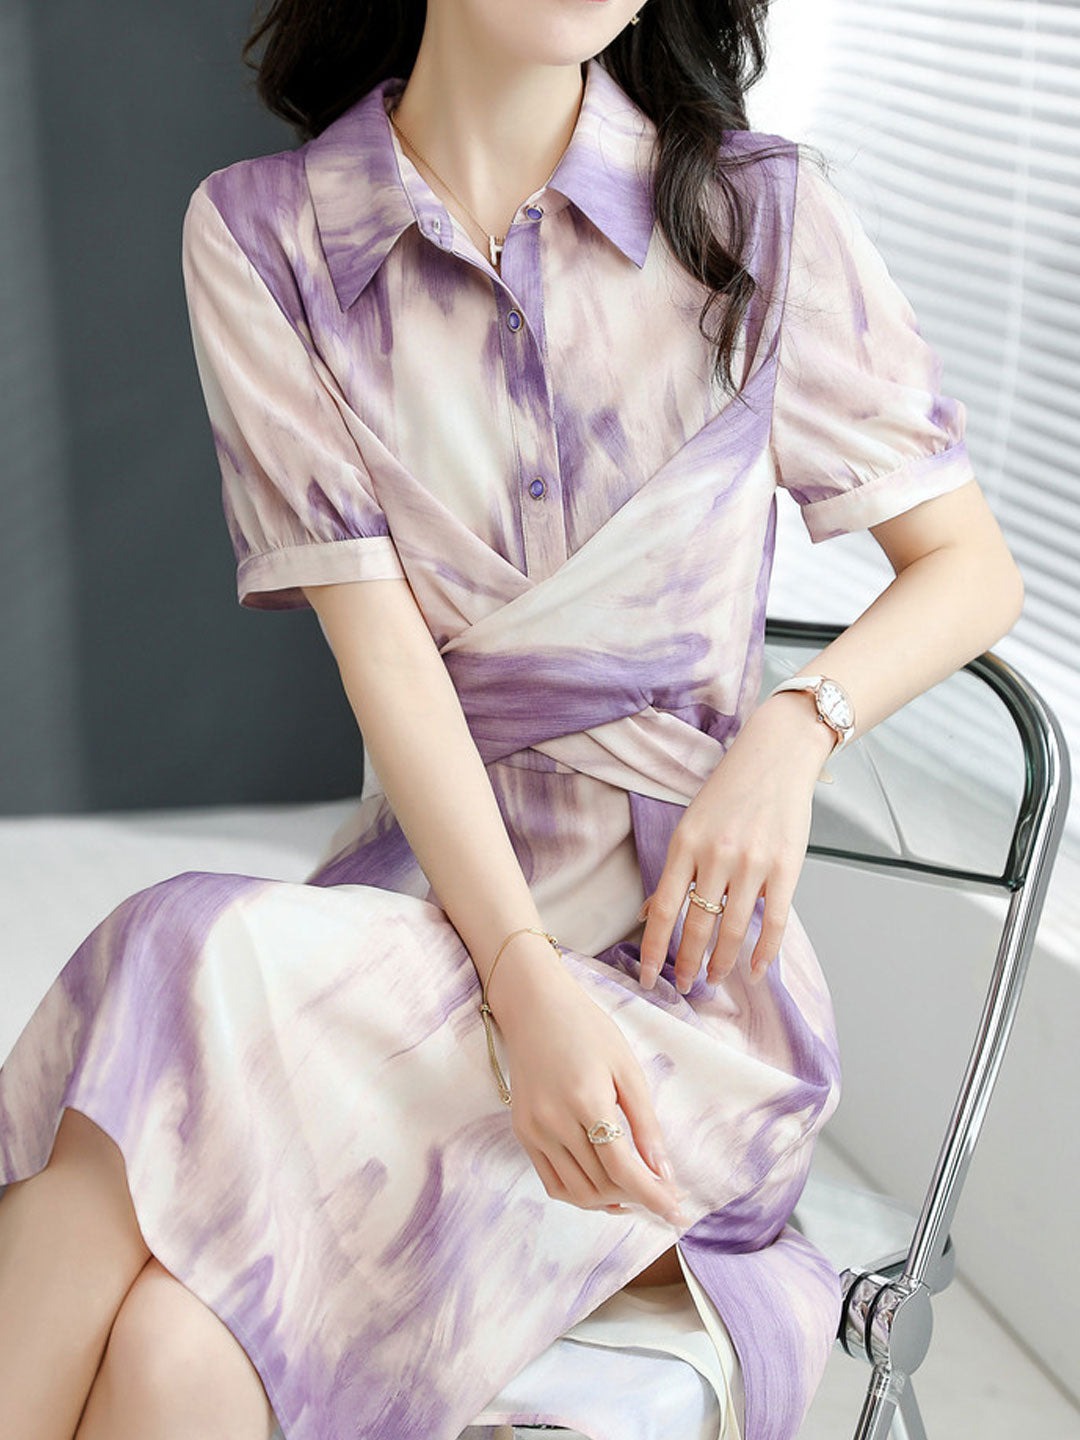 Kayla Elegant Printed Chiffon Dress